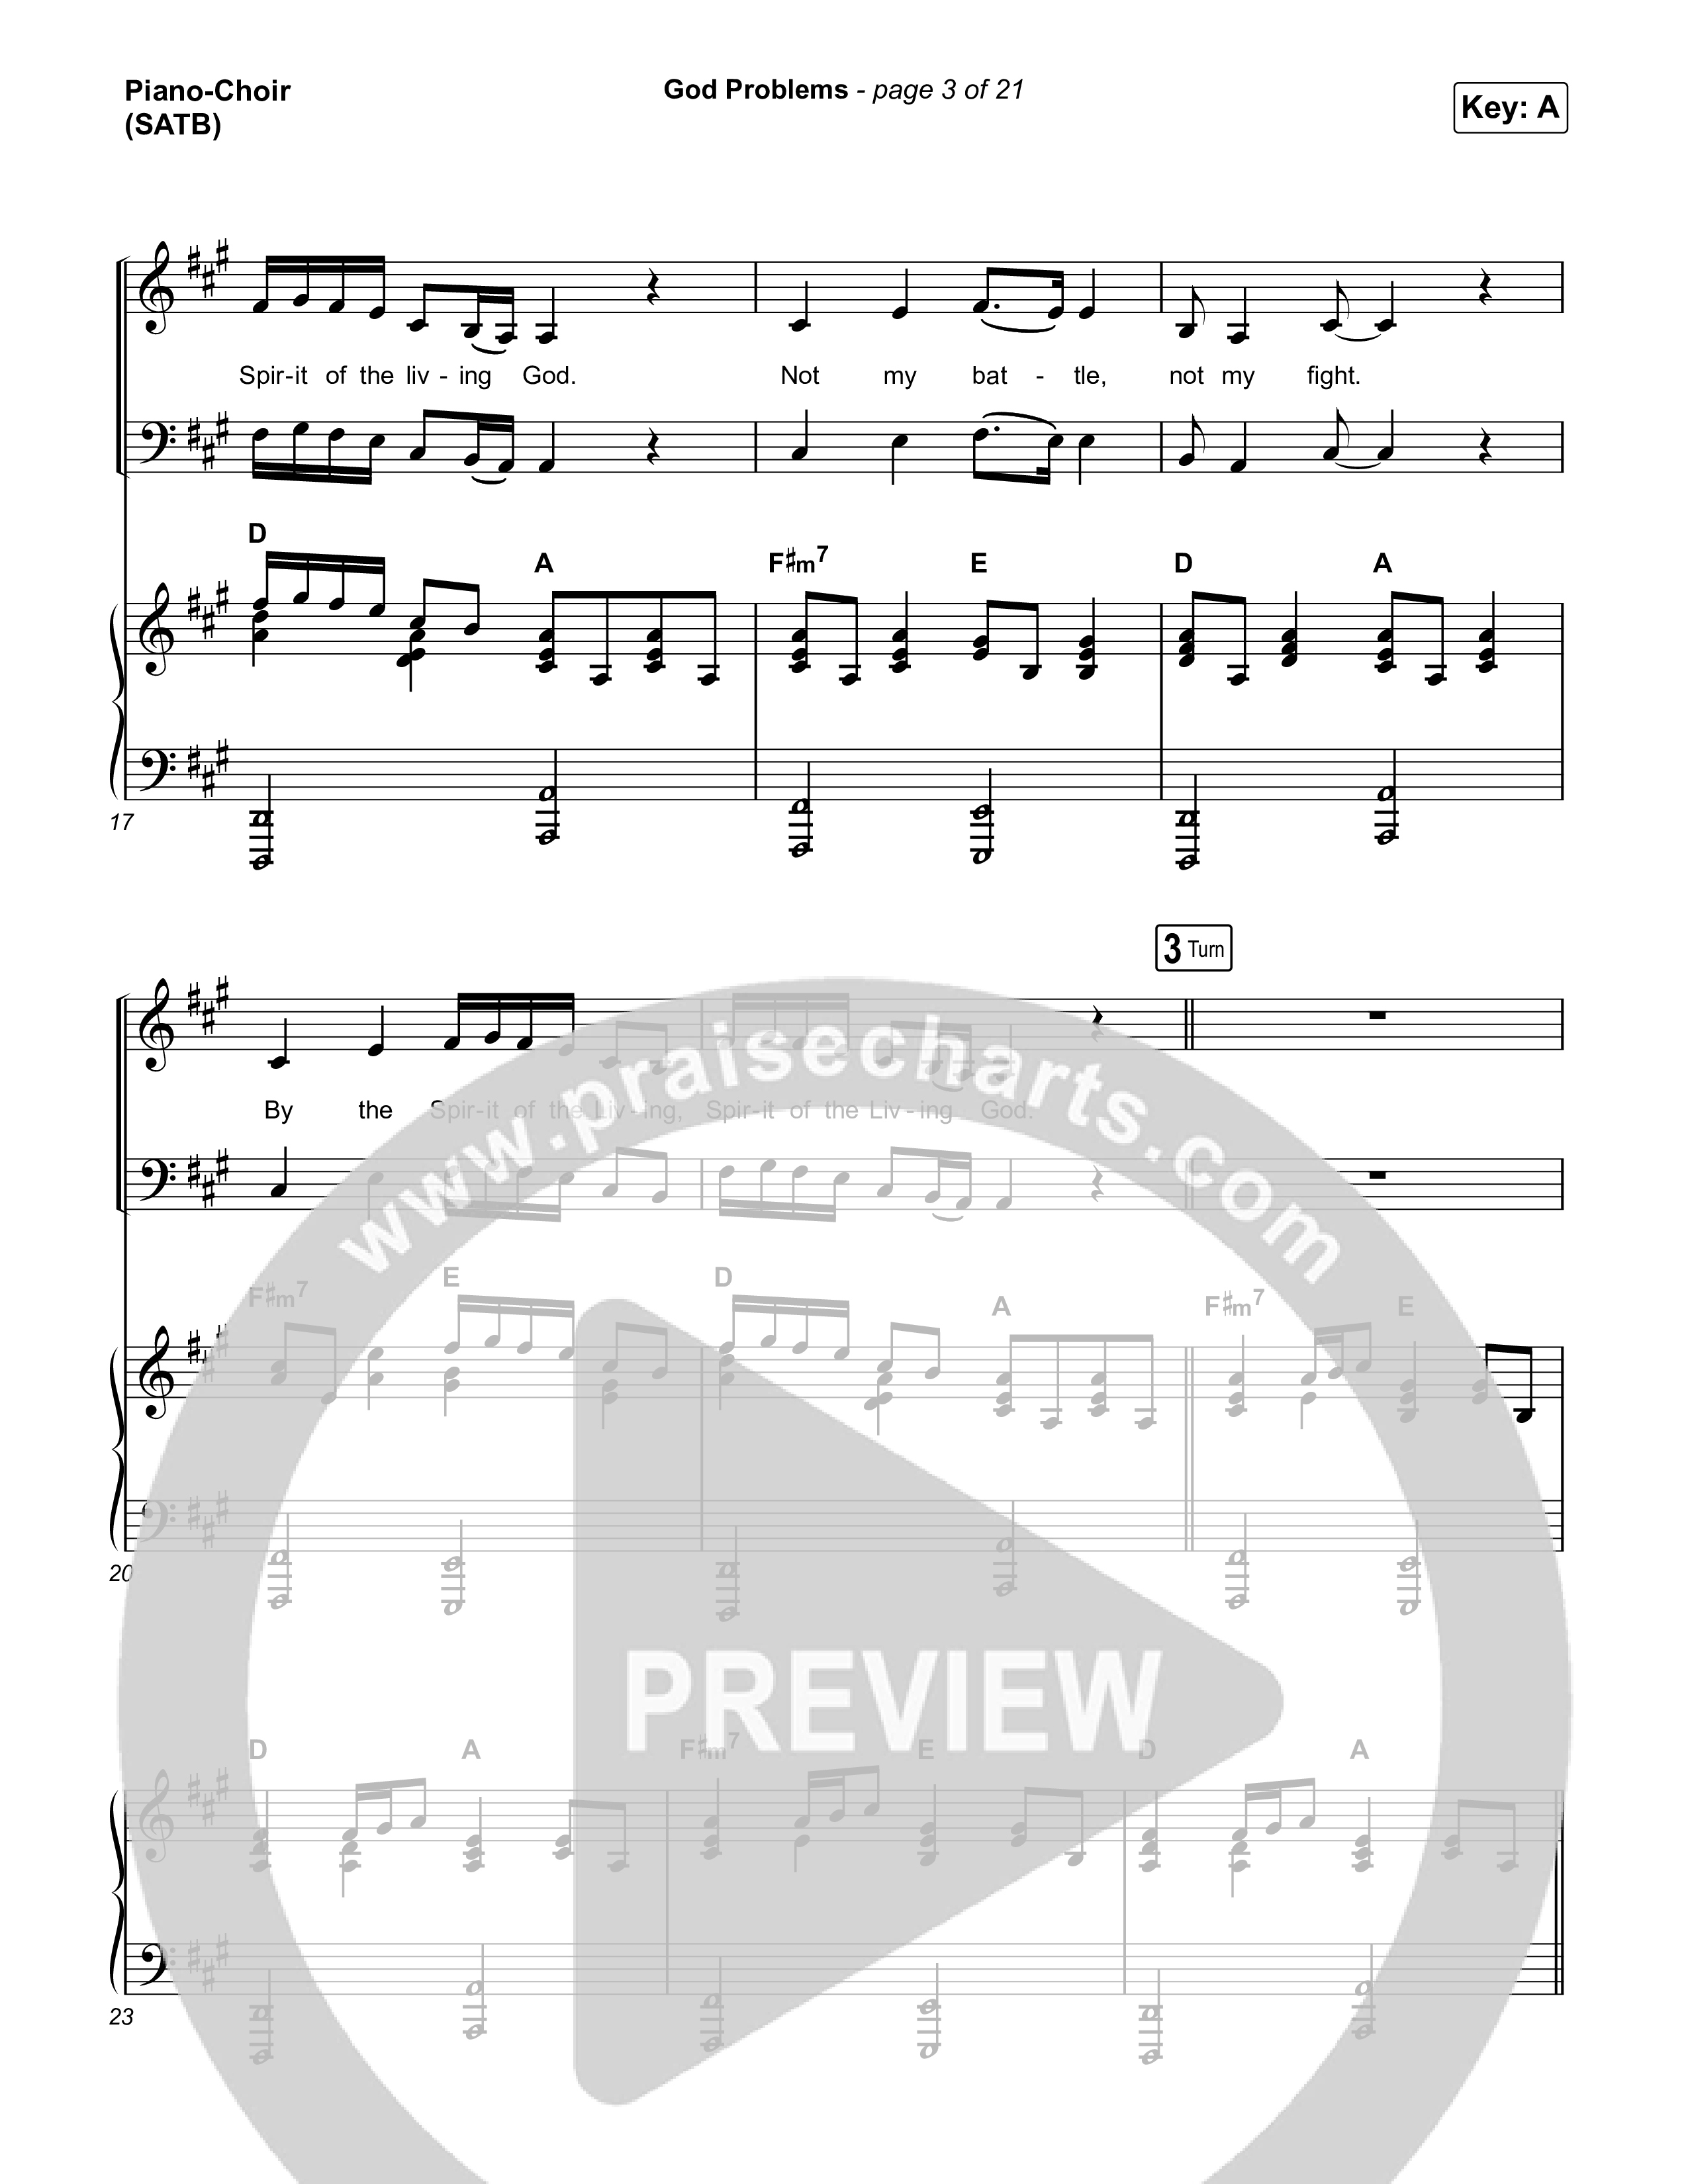 God Problems Piano/Vocal (SATB) (Maverick City Music / Chandler Moore / Naomi Raine)